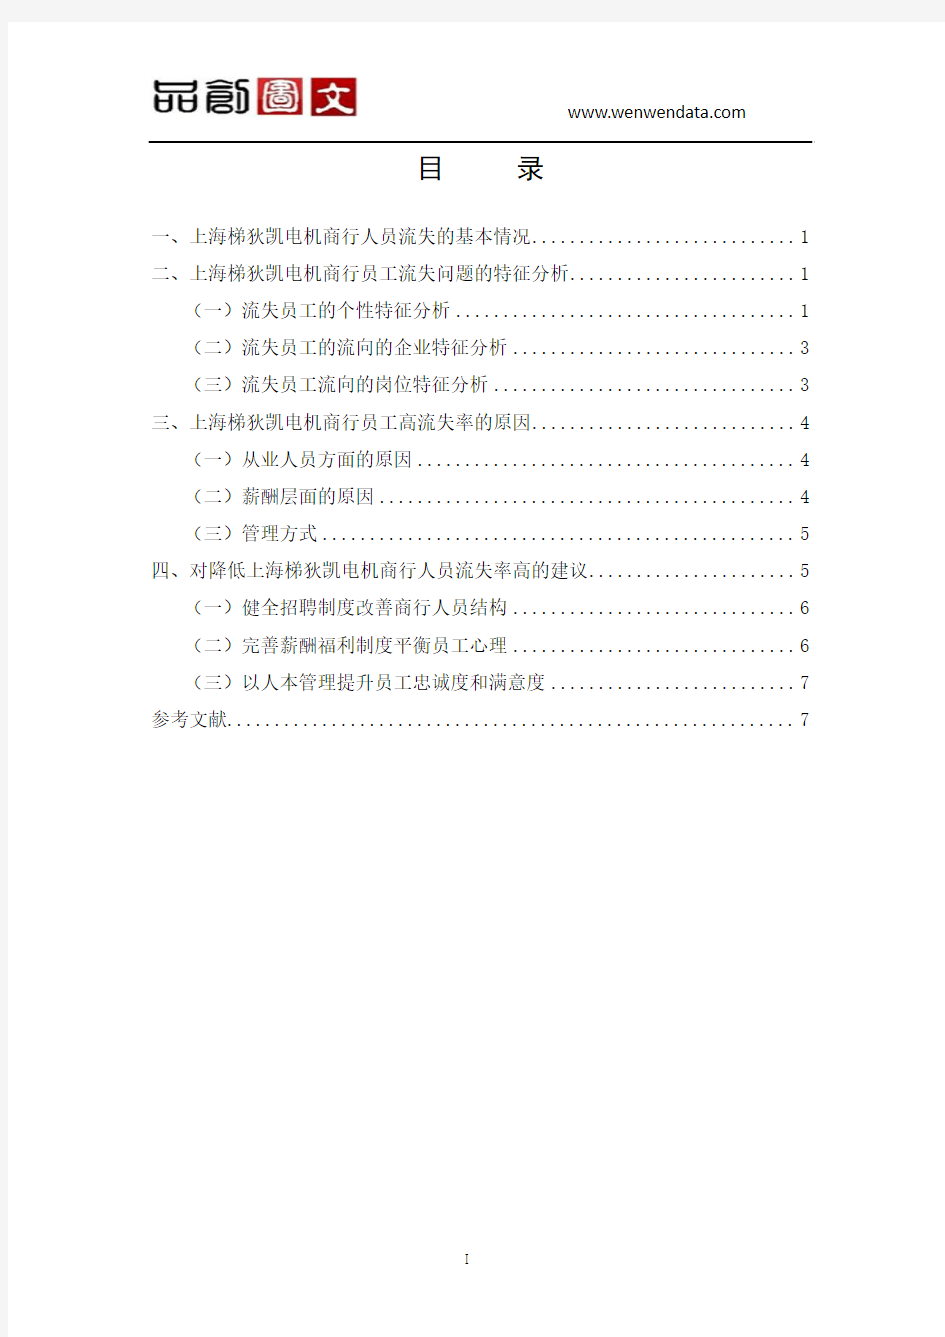 关于上海梯狄凯电机商行人员流失情况的分析报告-毕业论文